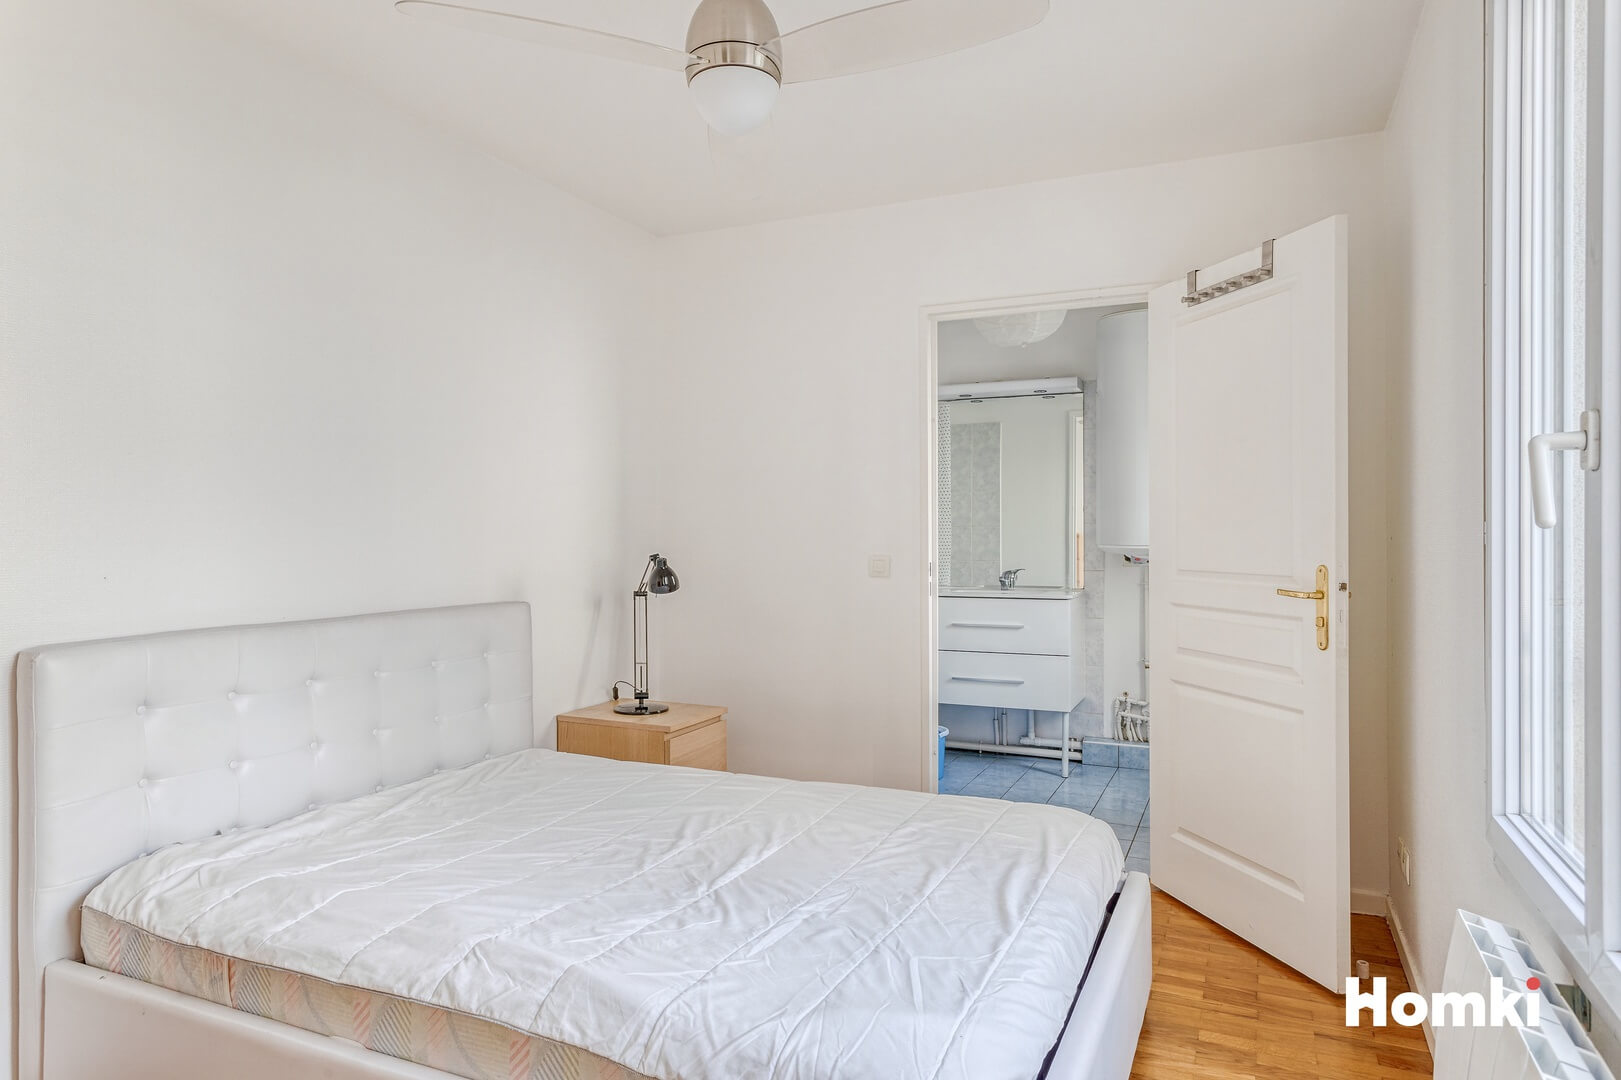 Homki - Vente Appartement  de 38.0 m² à Lyon 69003